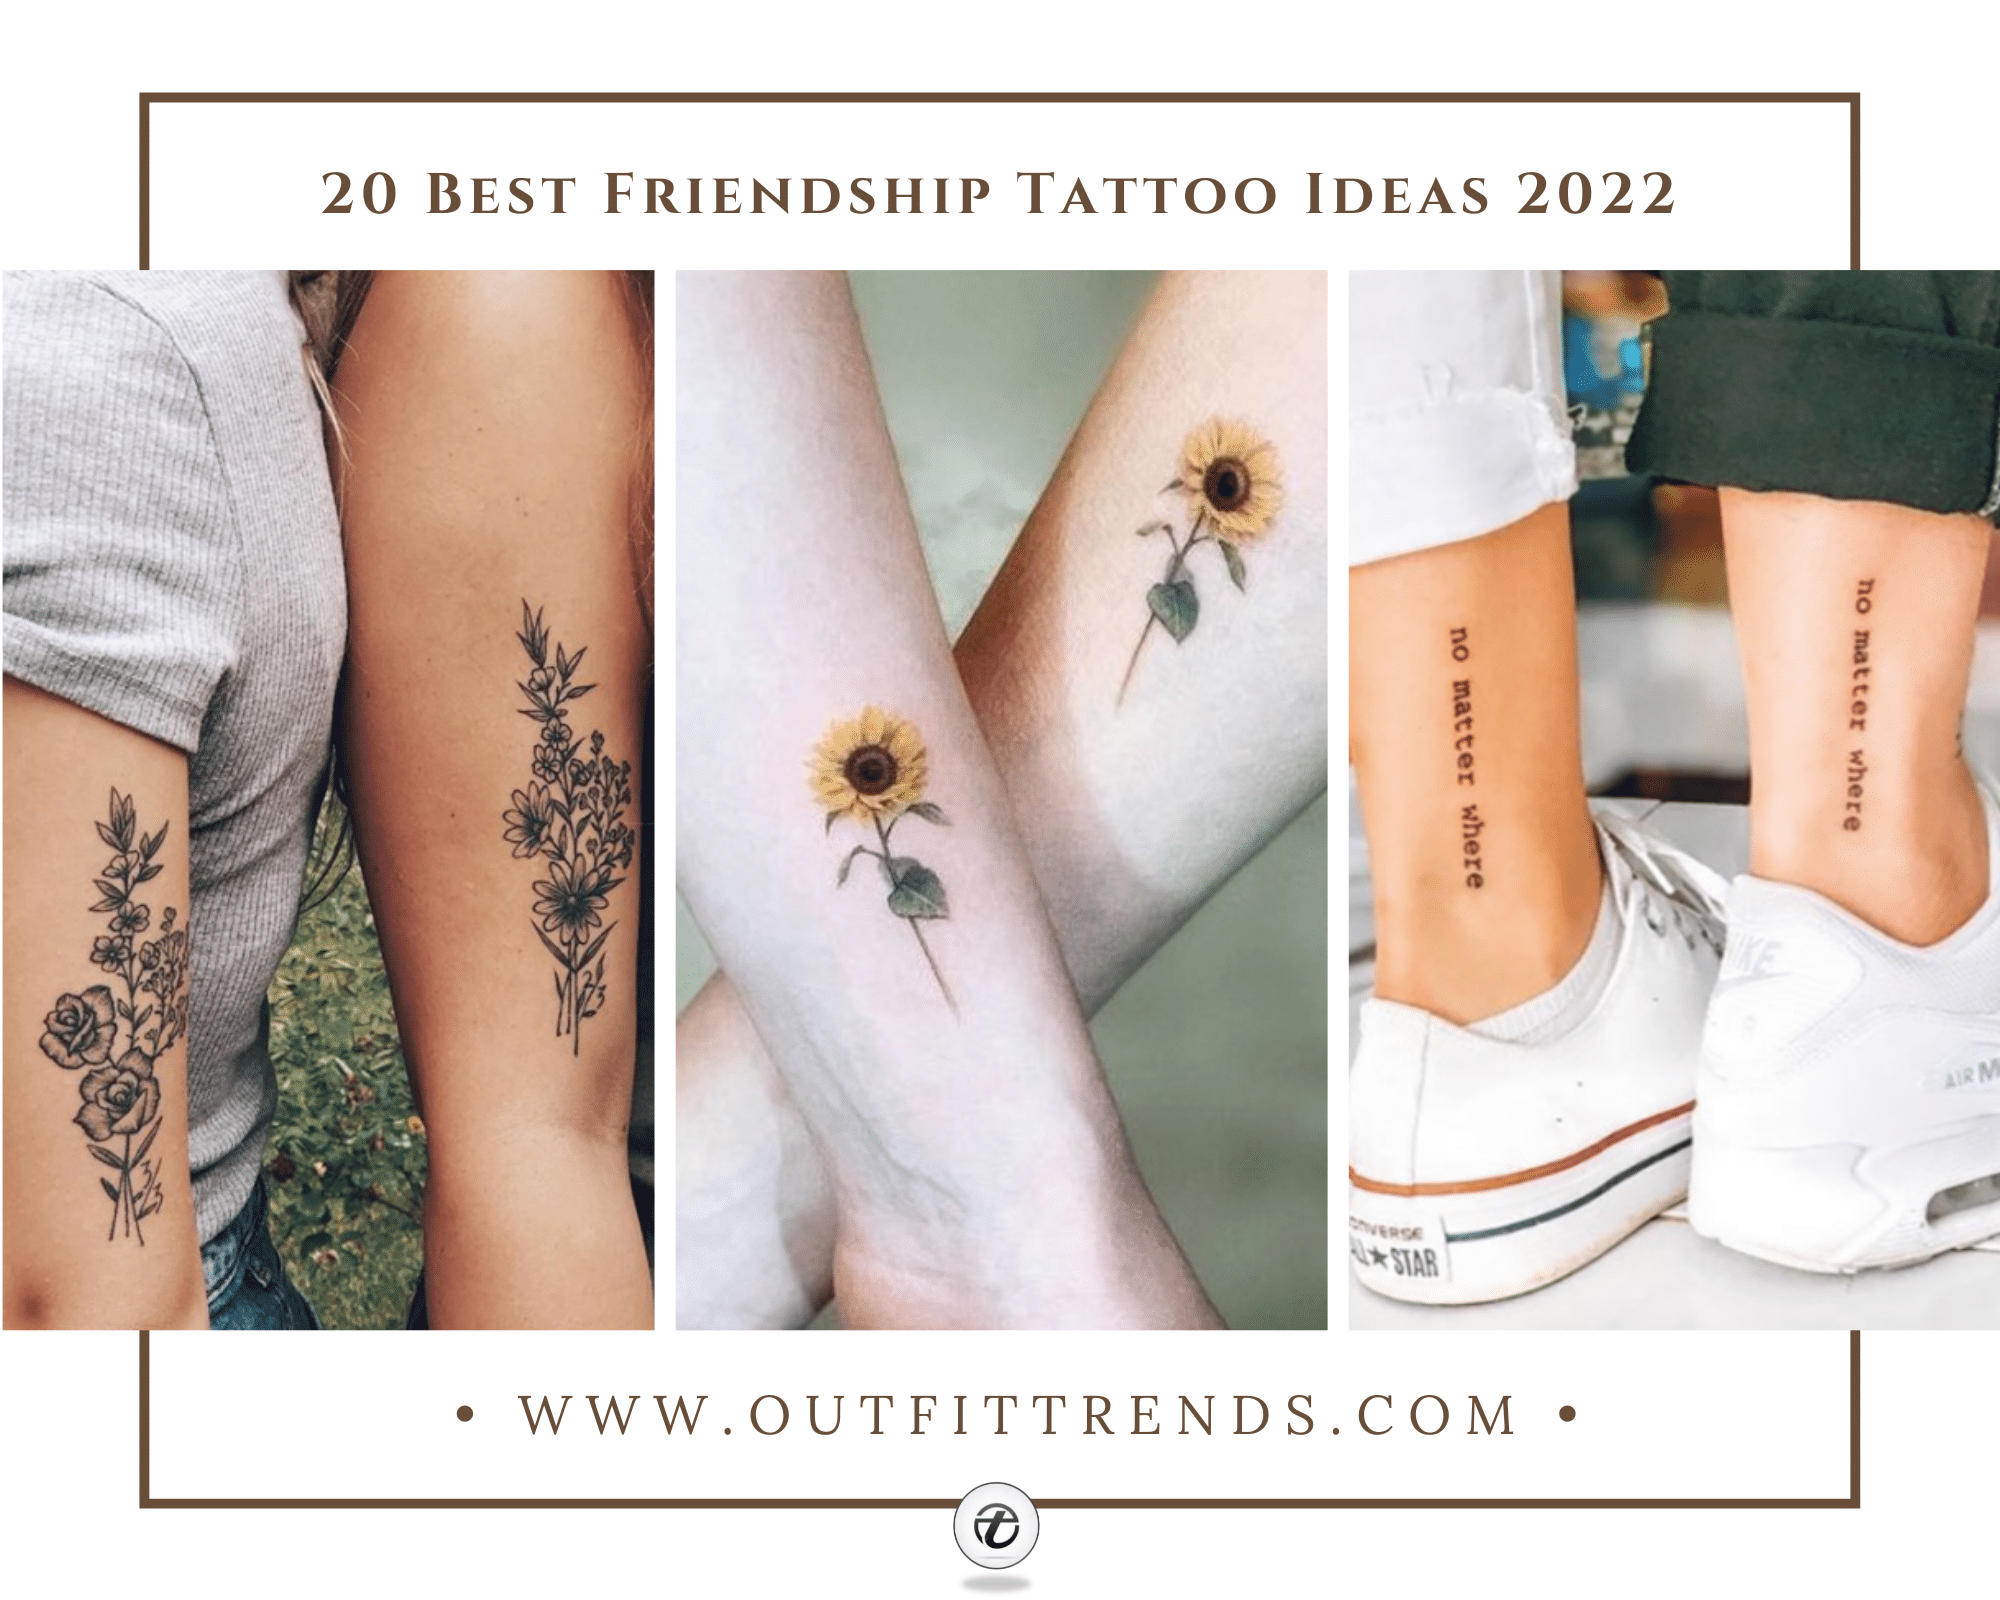 Top 85 Best Friend Tattoo Ideas  2021 Inspiration Guide